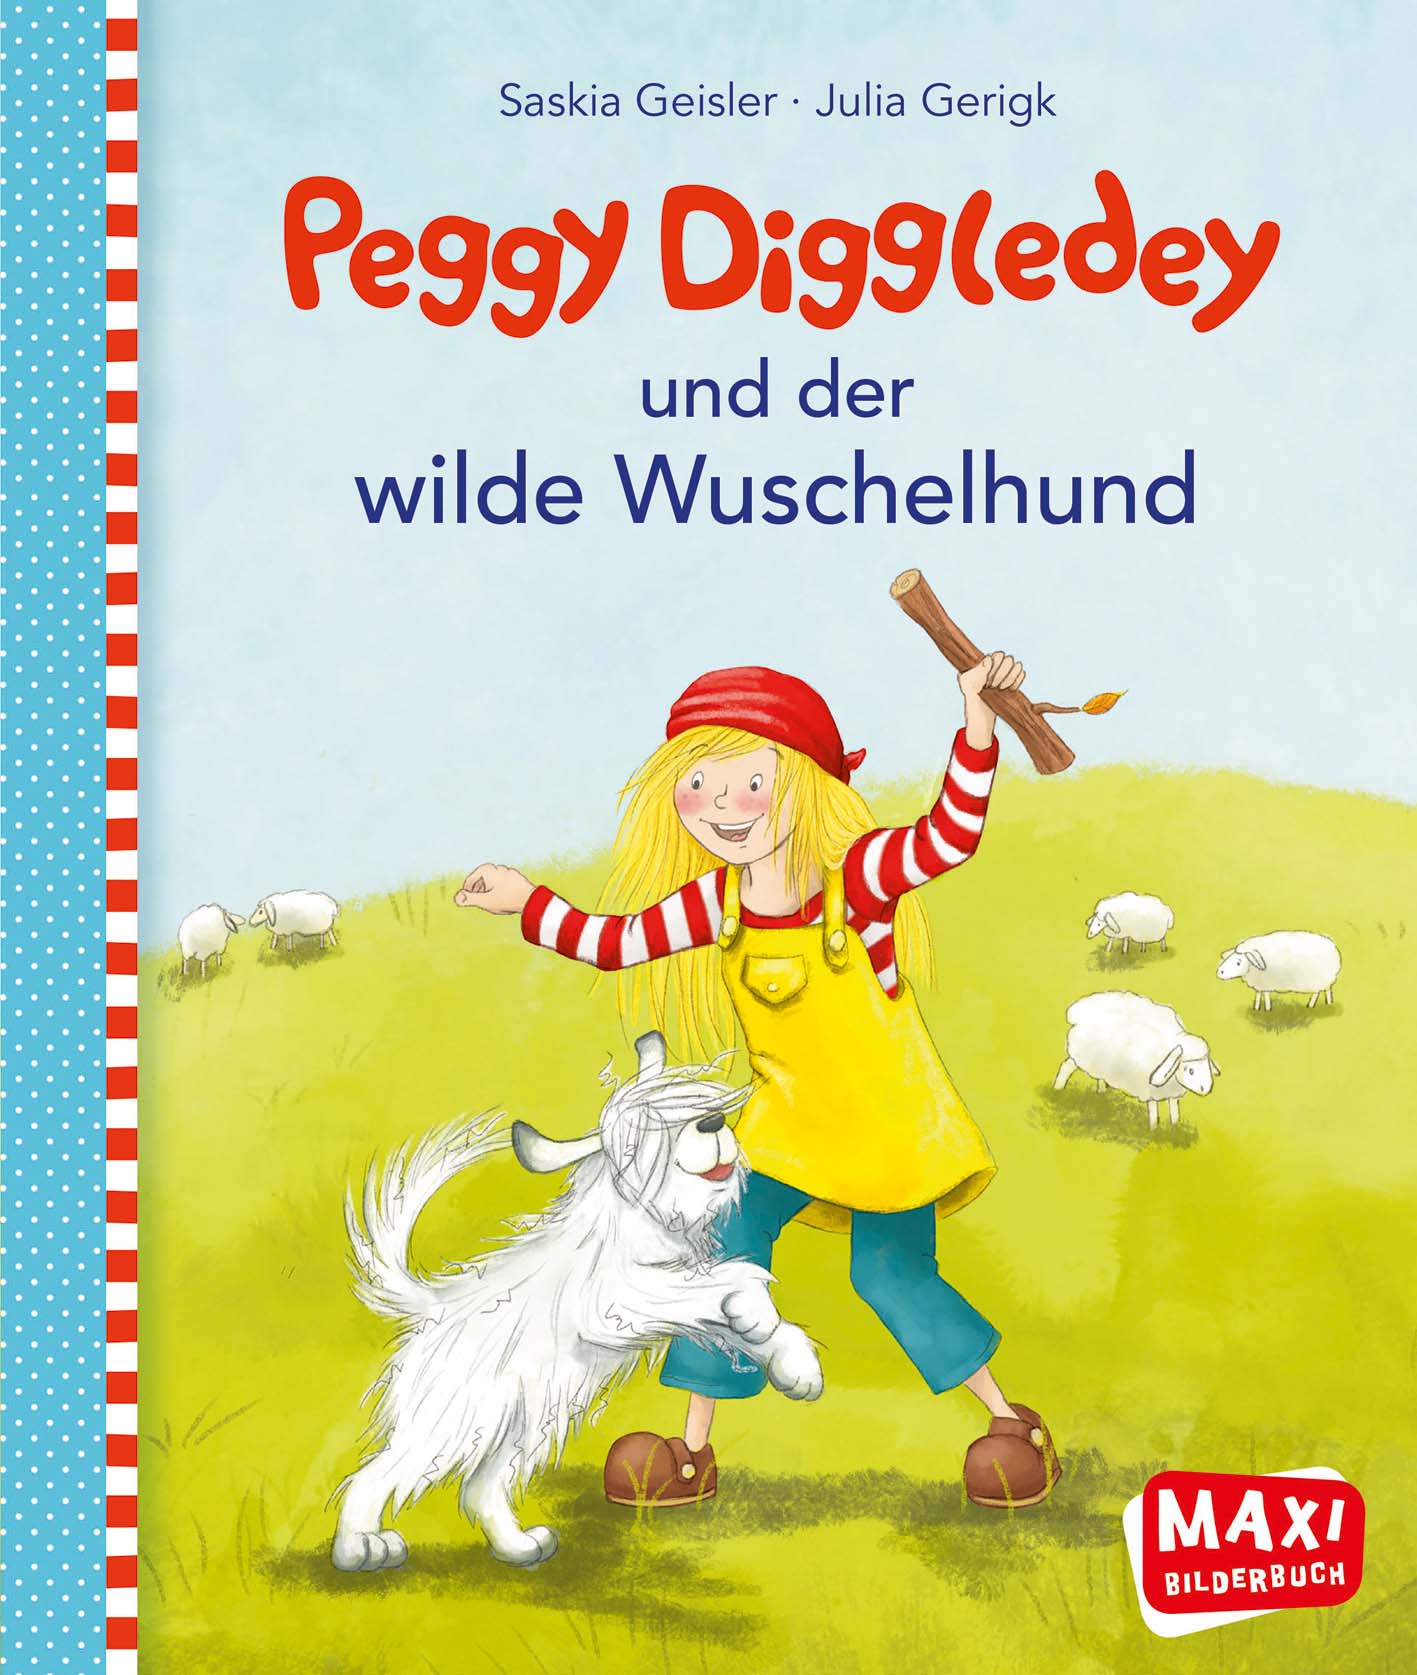 Maxibuch Peggy Diggledey und der wilde Wuschelhund